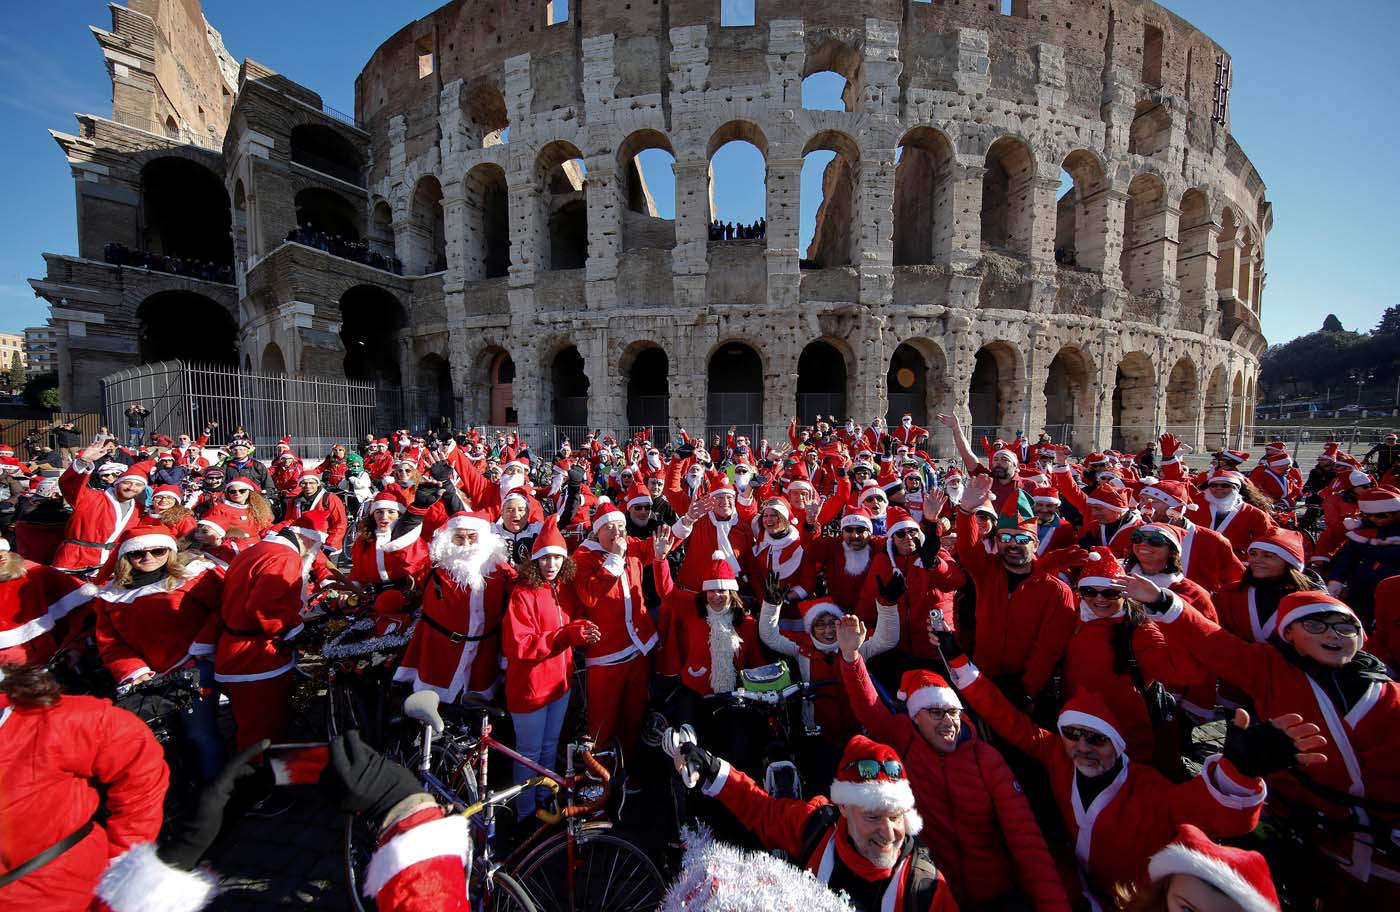 Cientos de Santas llegaron en bicicleta al Coliseo de Roma (fotos)